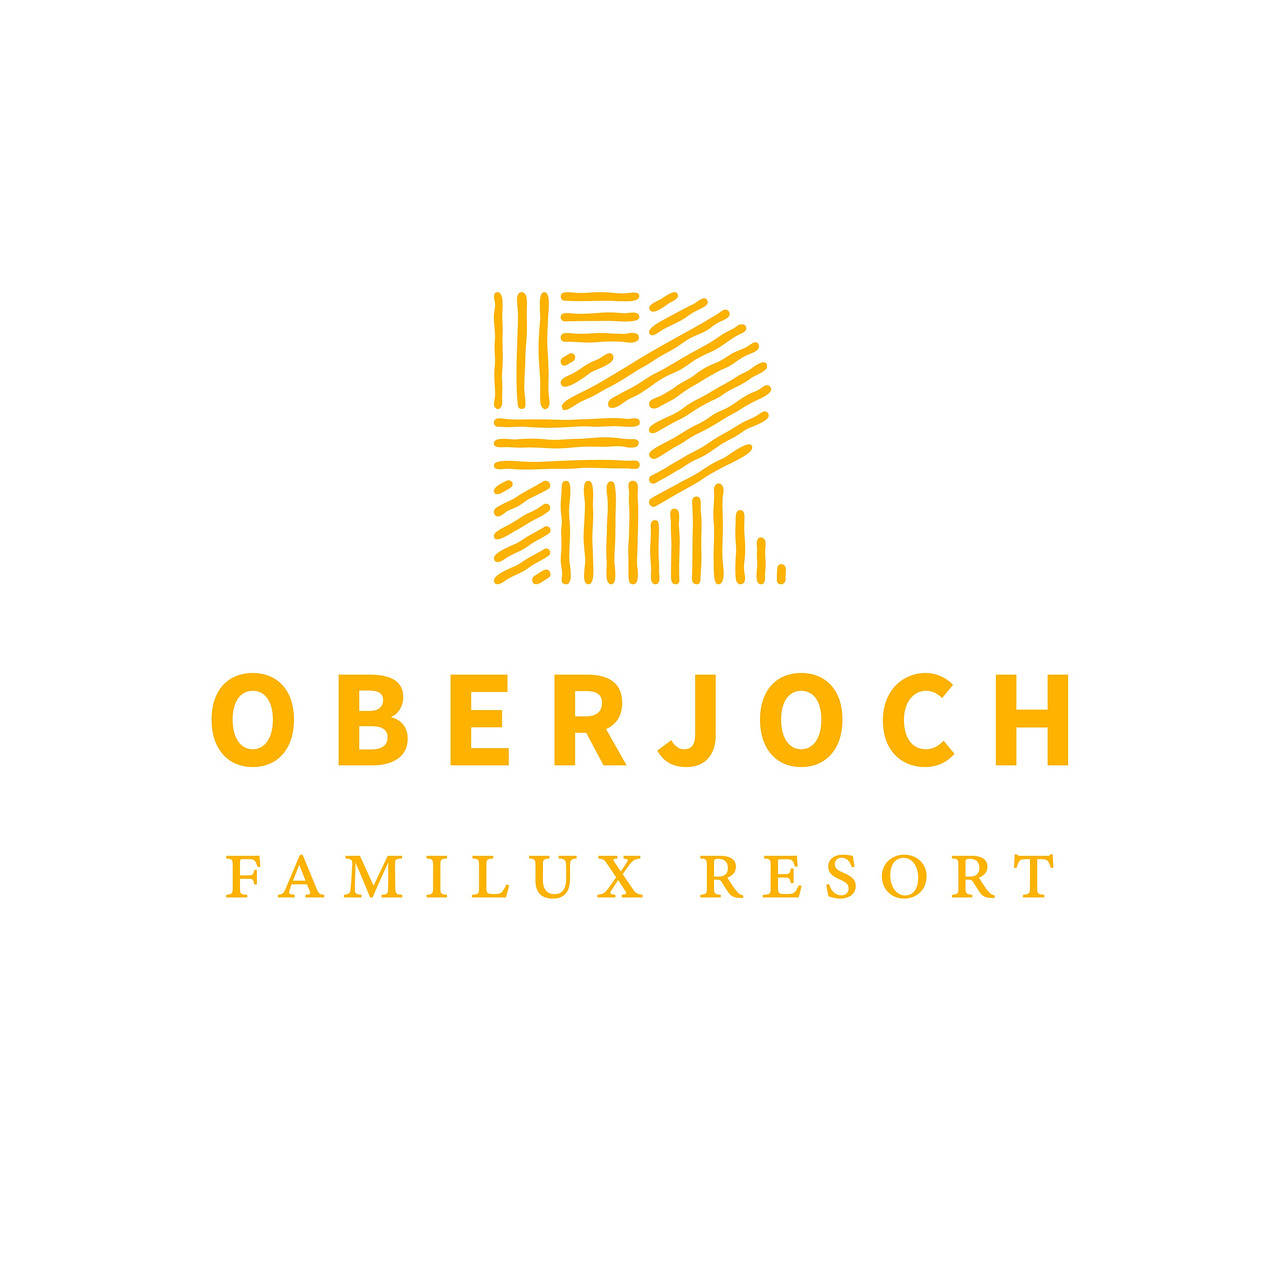 Oberjoch – Familux Resort